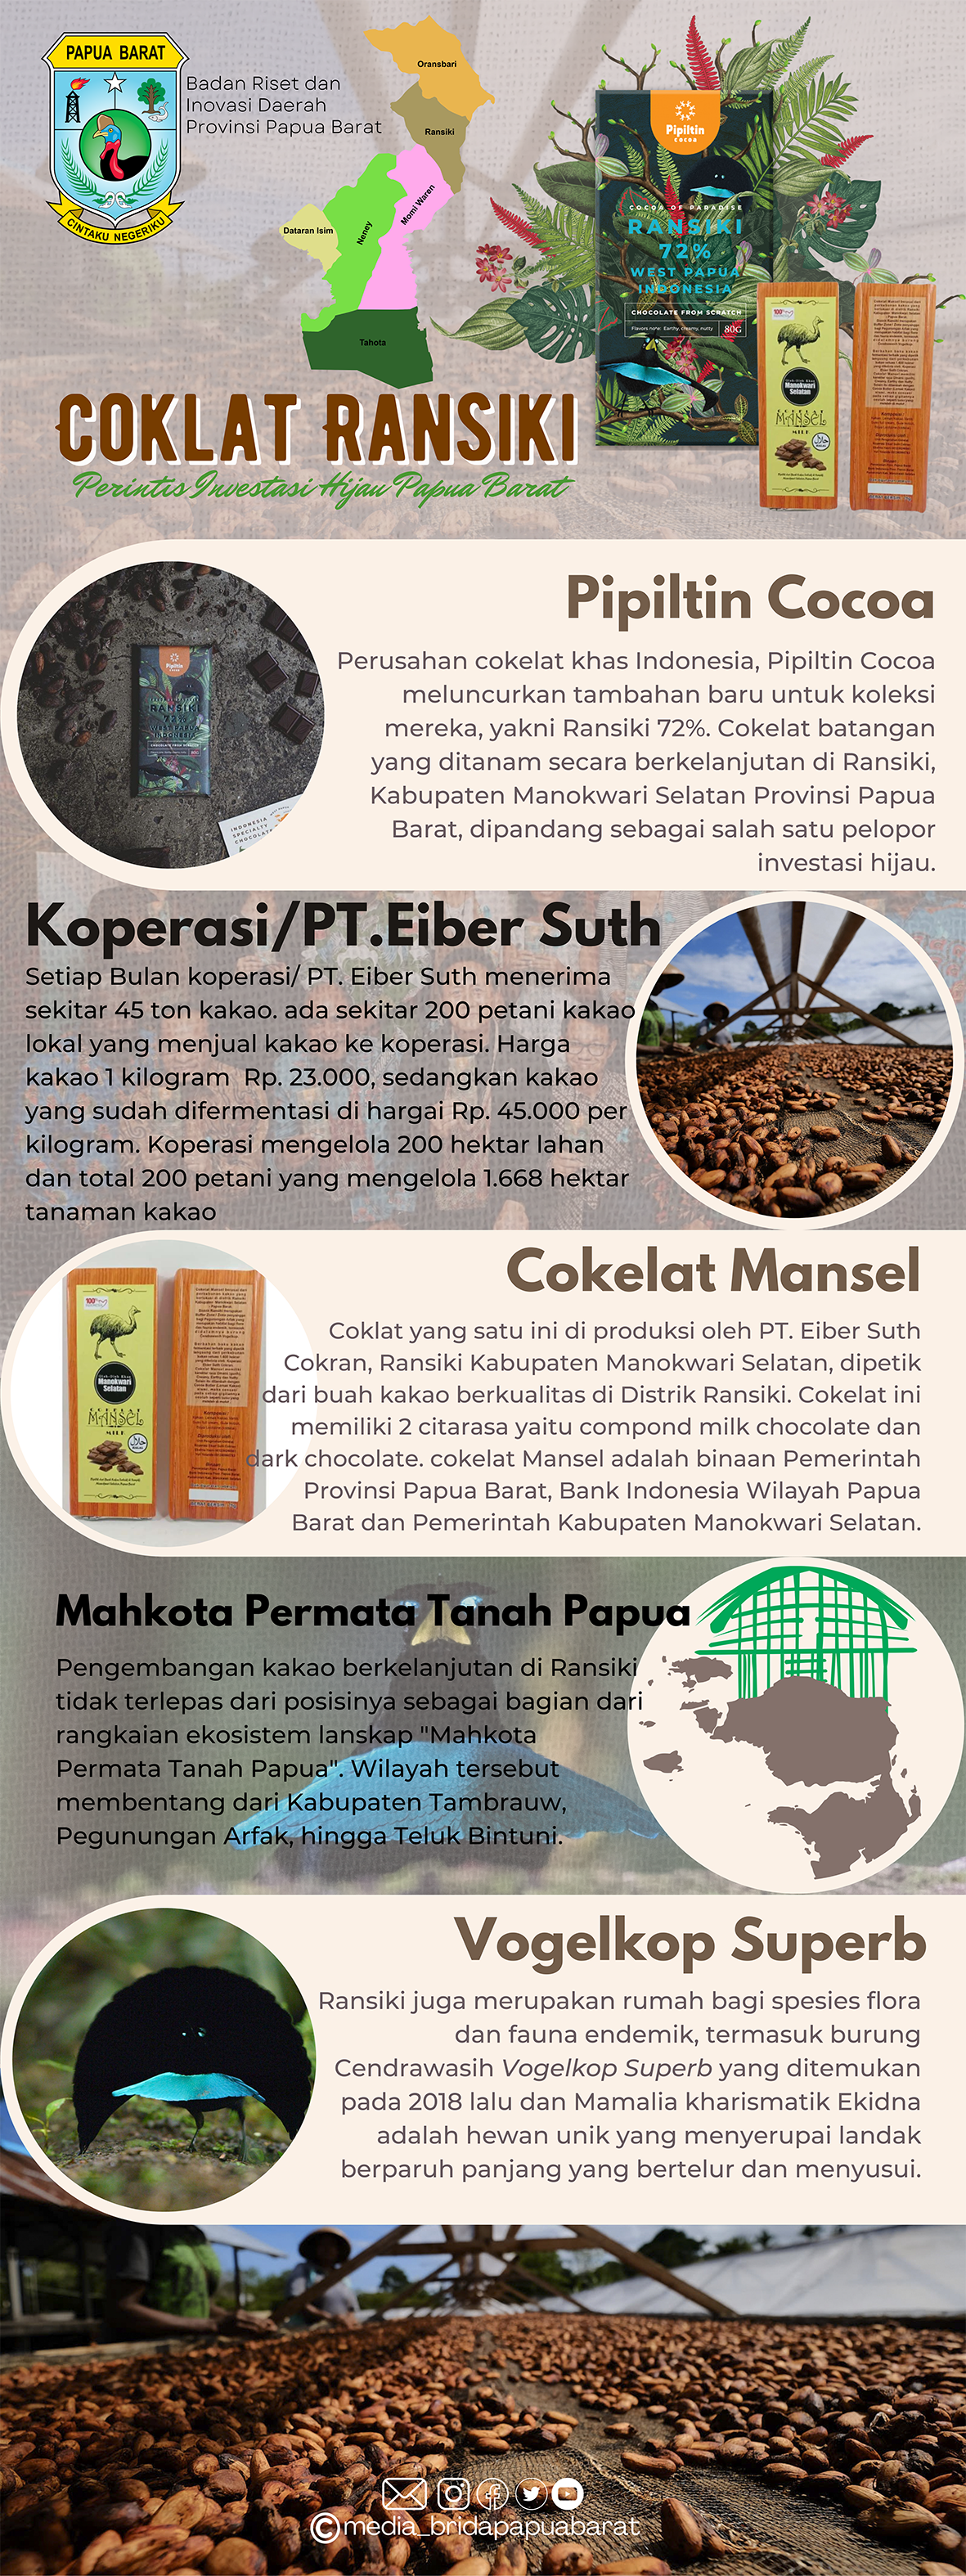 Inovasi Cokelat Ransiki Kabupaten Manokwari Selatan